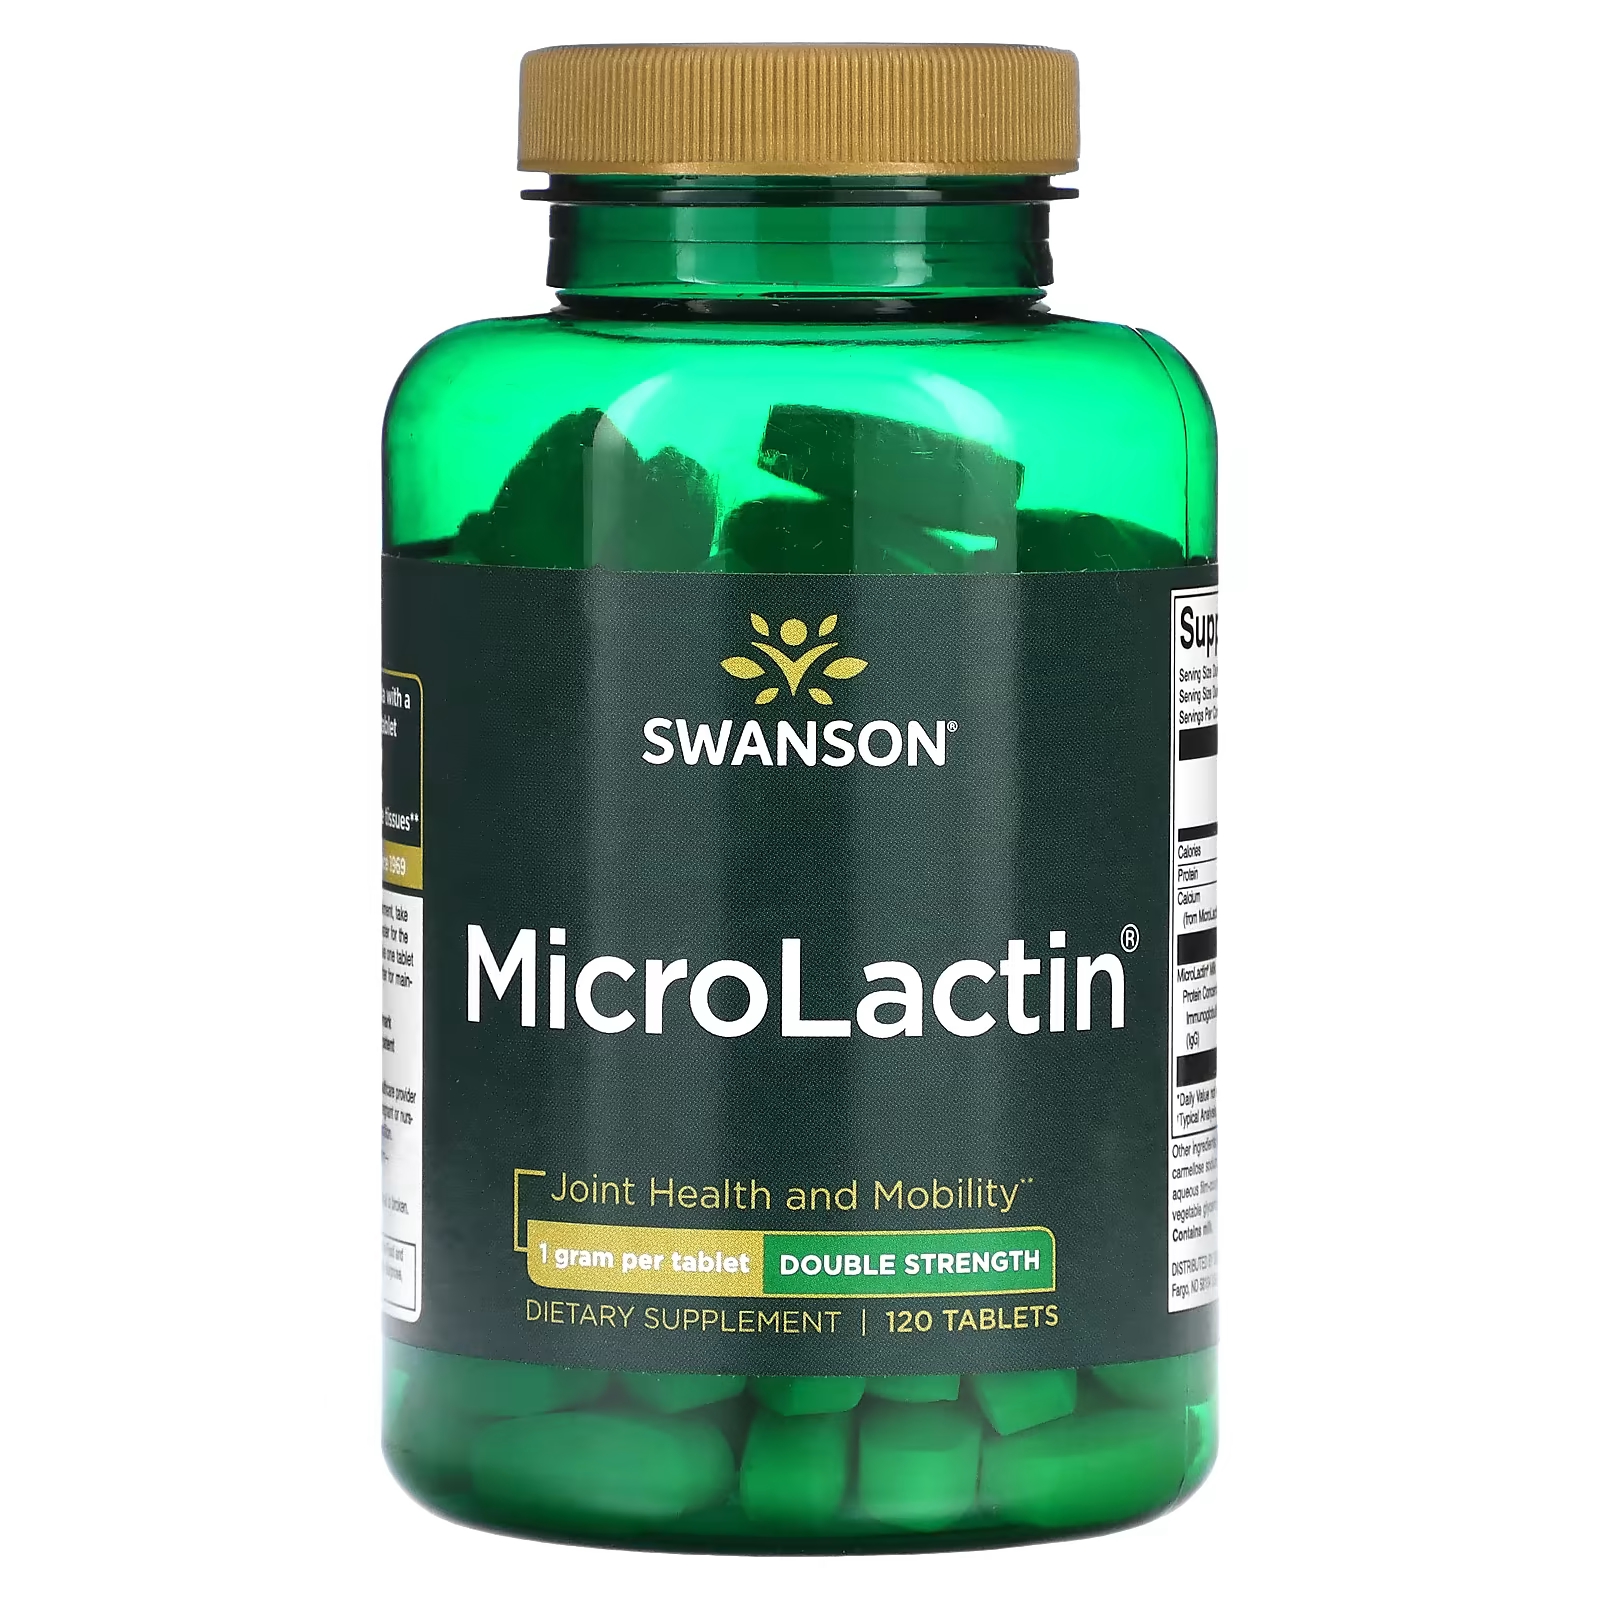 Пищевые добавки Swanson MicroLactin двойной силы, 120 таблеток